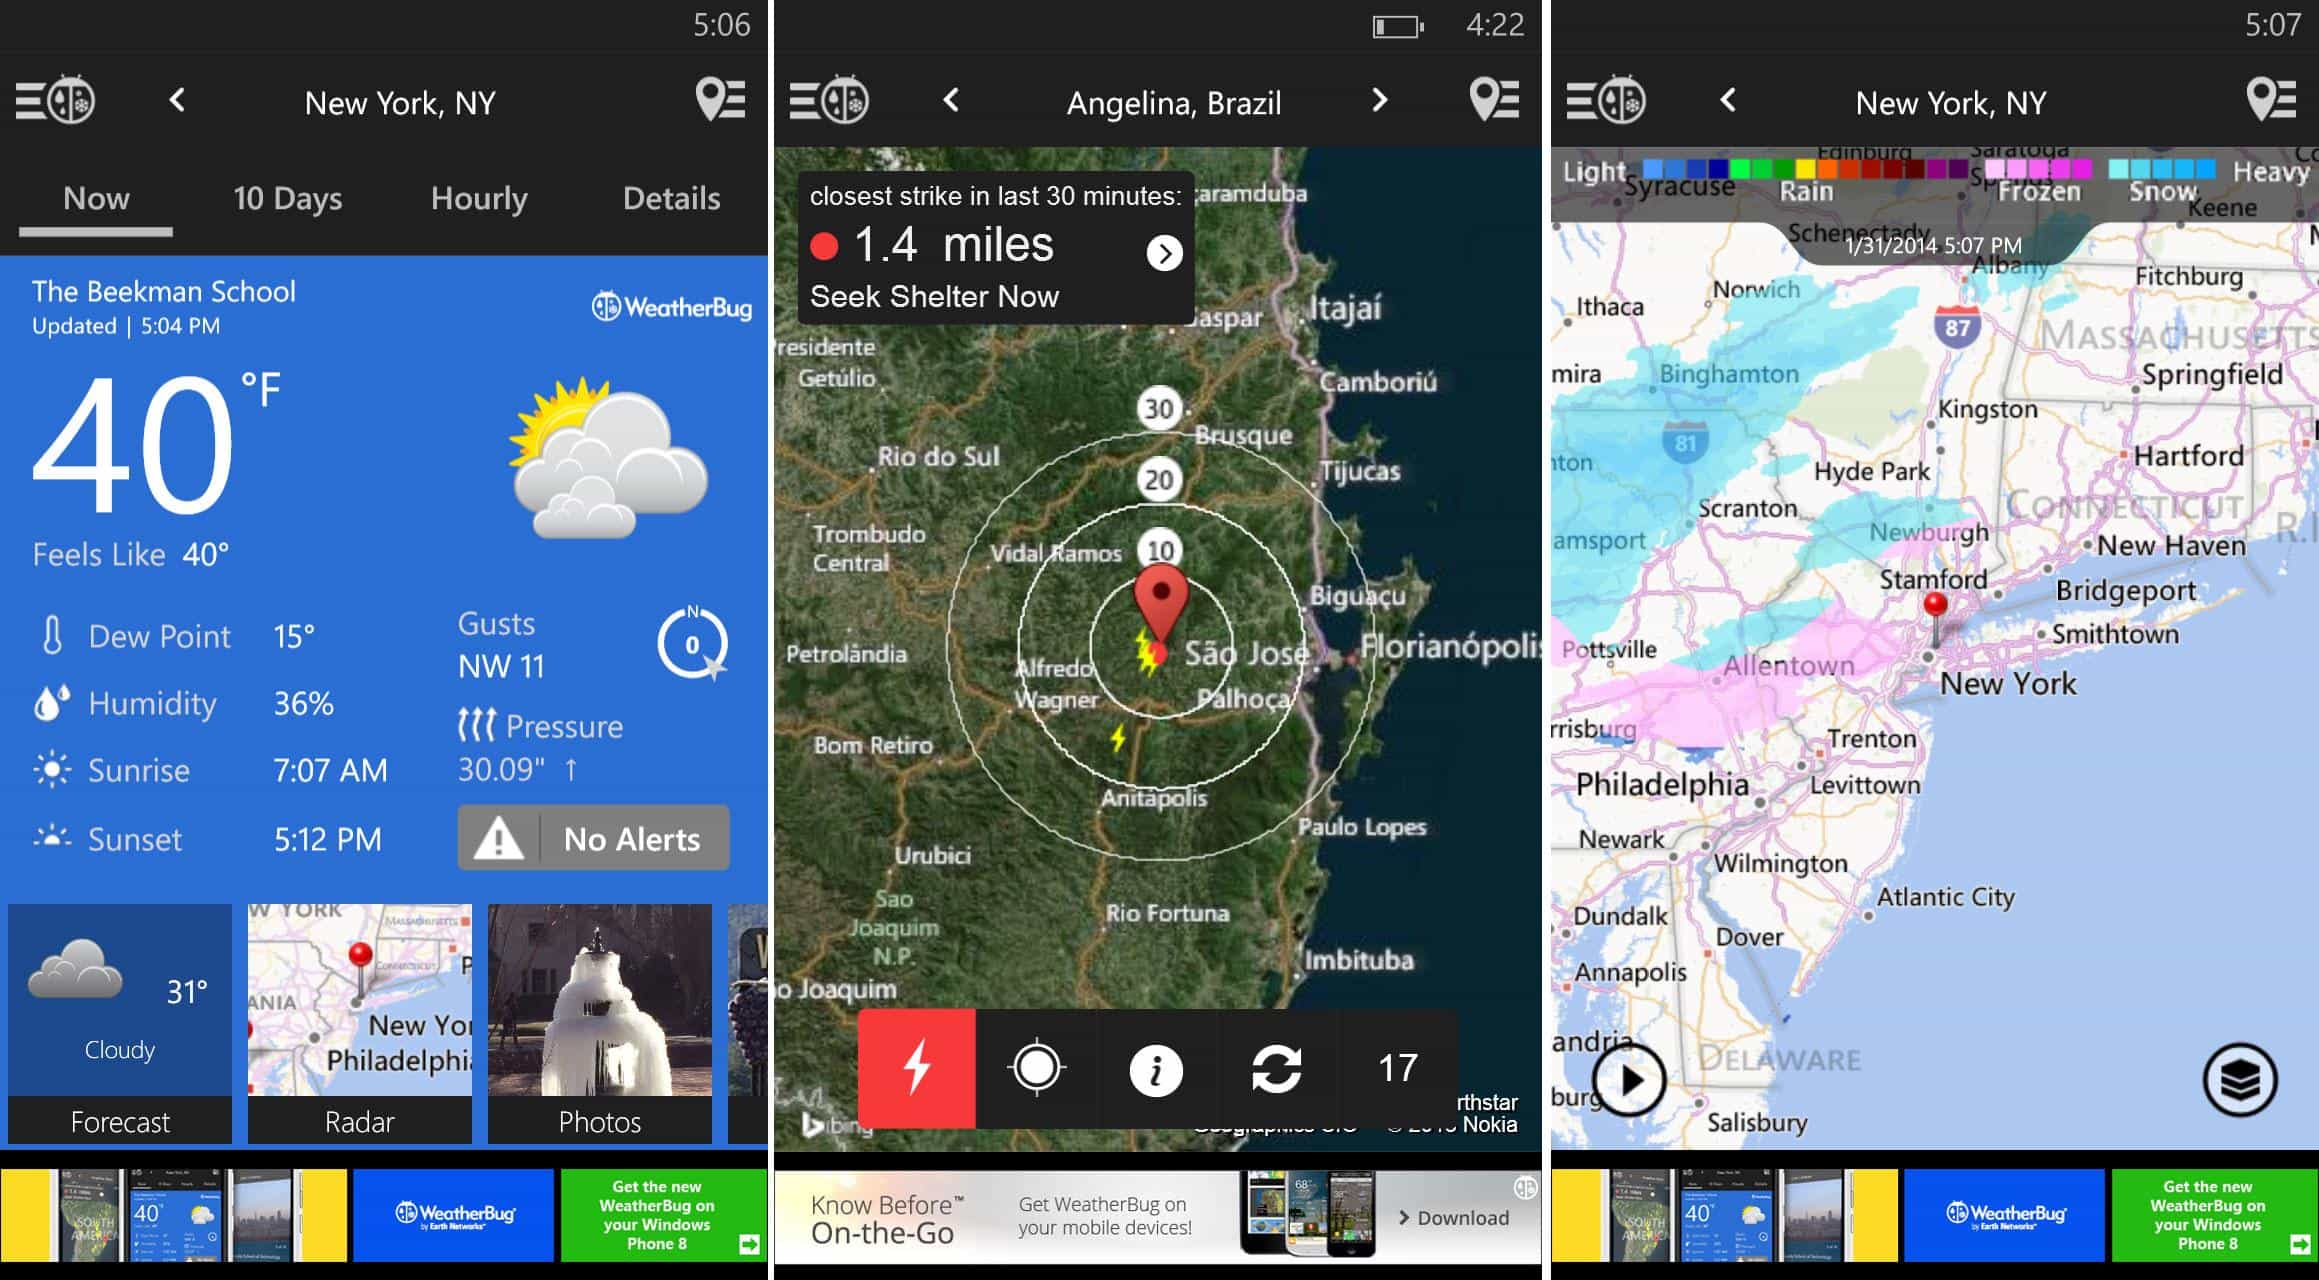  أفضل 11 تطبيق ستحتاج إليه للسفر والسياحة، أعرف حالة الطقس مع تطبيق (WeatherBug):